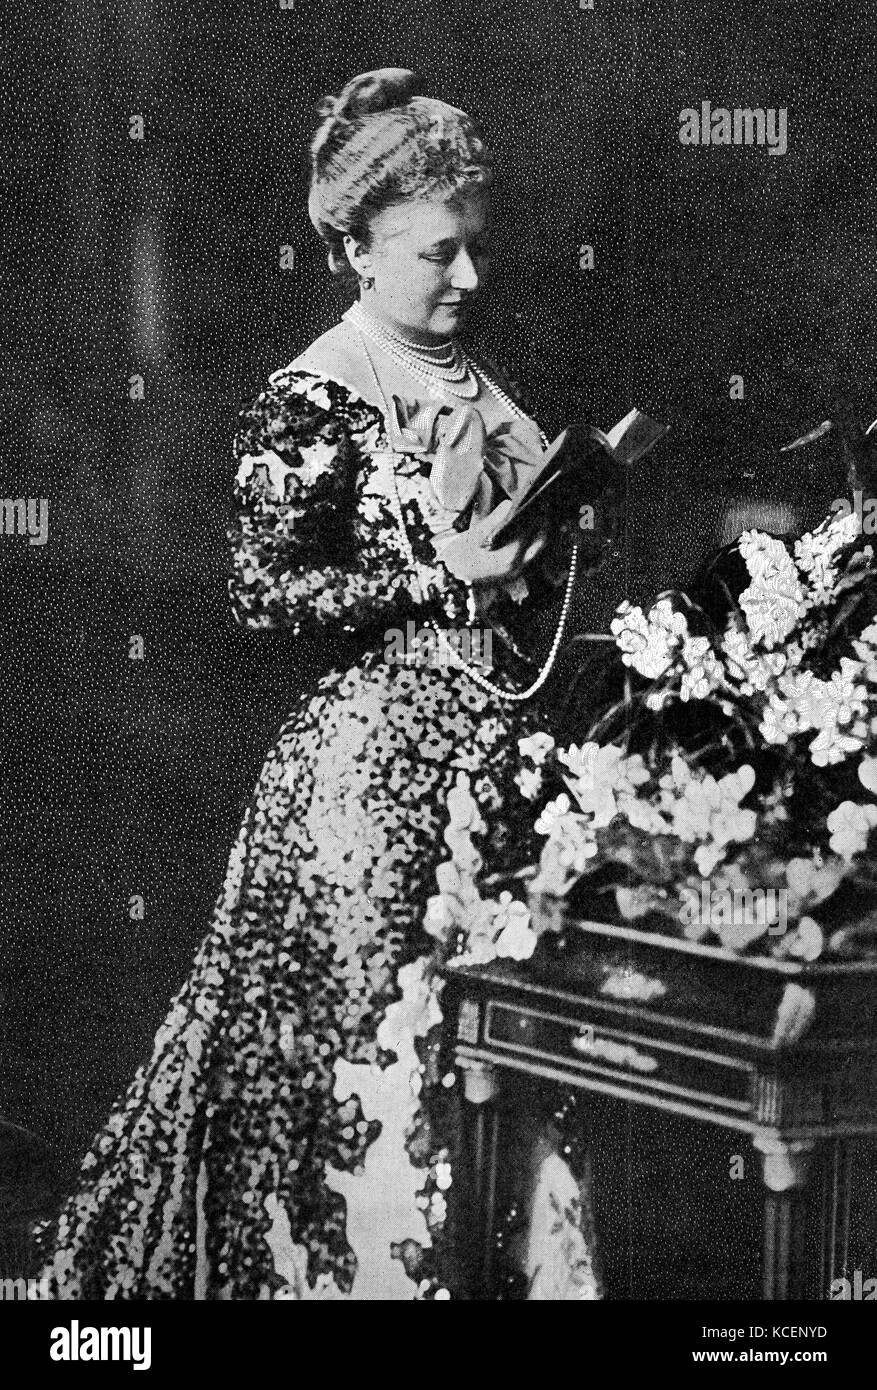 Photographie d'Augusta Victoria de Schleswig-Holstein (1858-1921) la première épouse de l'empereur Guillaume II (1859-1941) Roi de Prusse et l'empereur allemand. En date du 19e siècle Banque D'Images